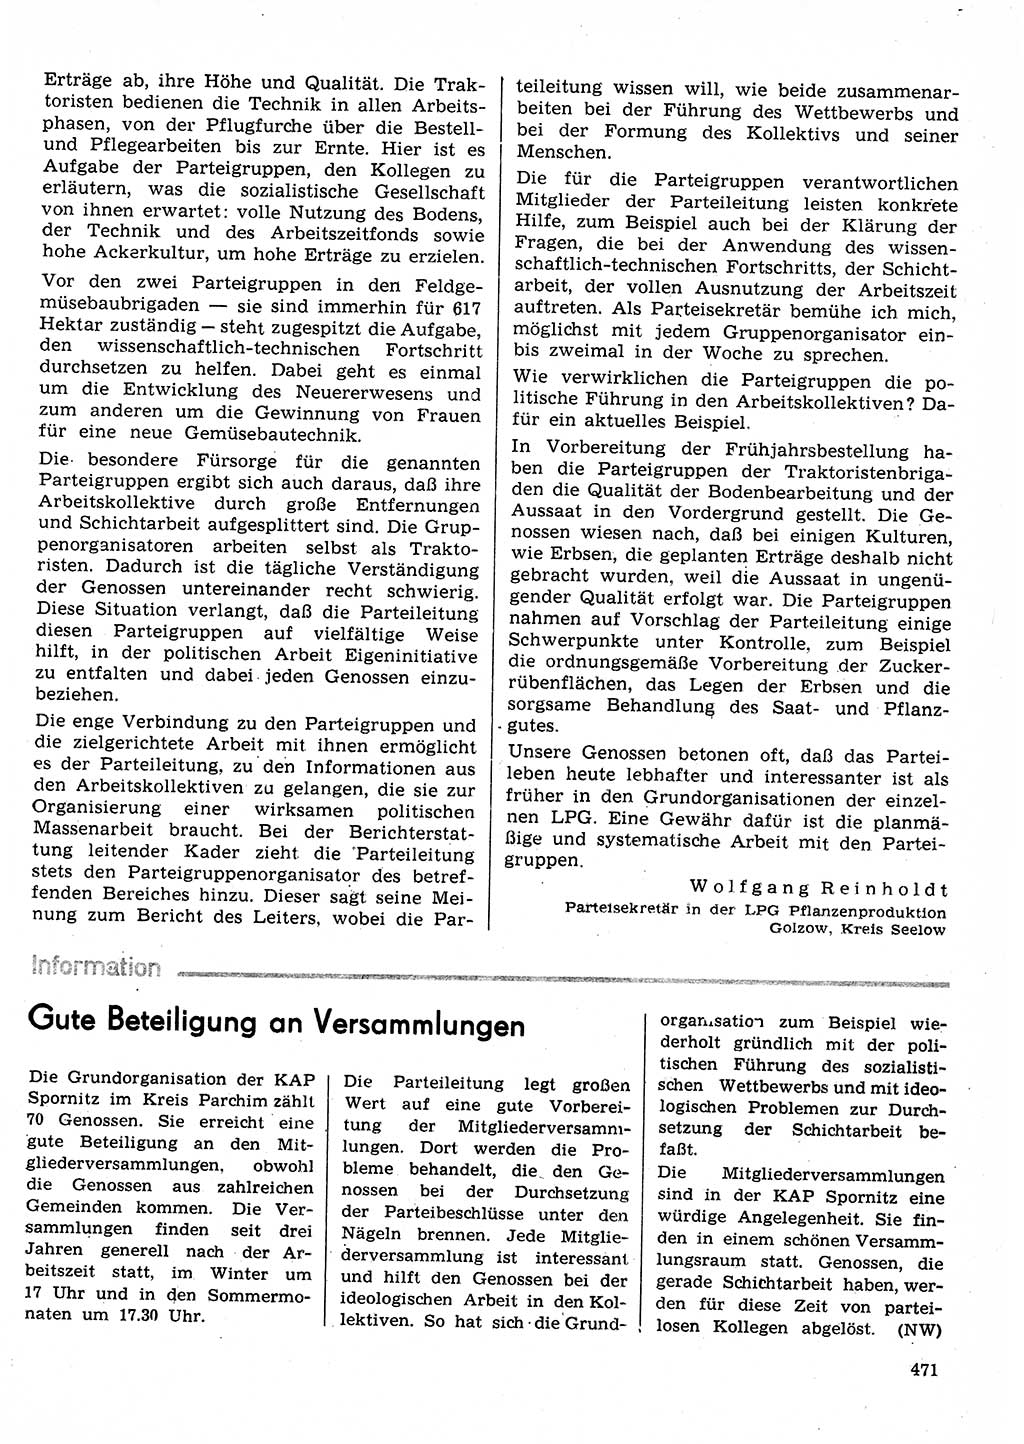 Neuer Weg (NW), Organ des Zentralkomitees (ZK) der SED (Sozialistische Einheitspartei Deutschlands) für Fragen des Parteilebens, 30. Jahrgang [Deutsche Demokratische Republik (DDR)] 1975, Seite 471 (NW ZK SED DDR 1975, S. 471)